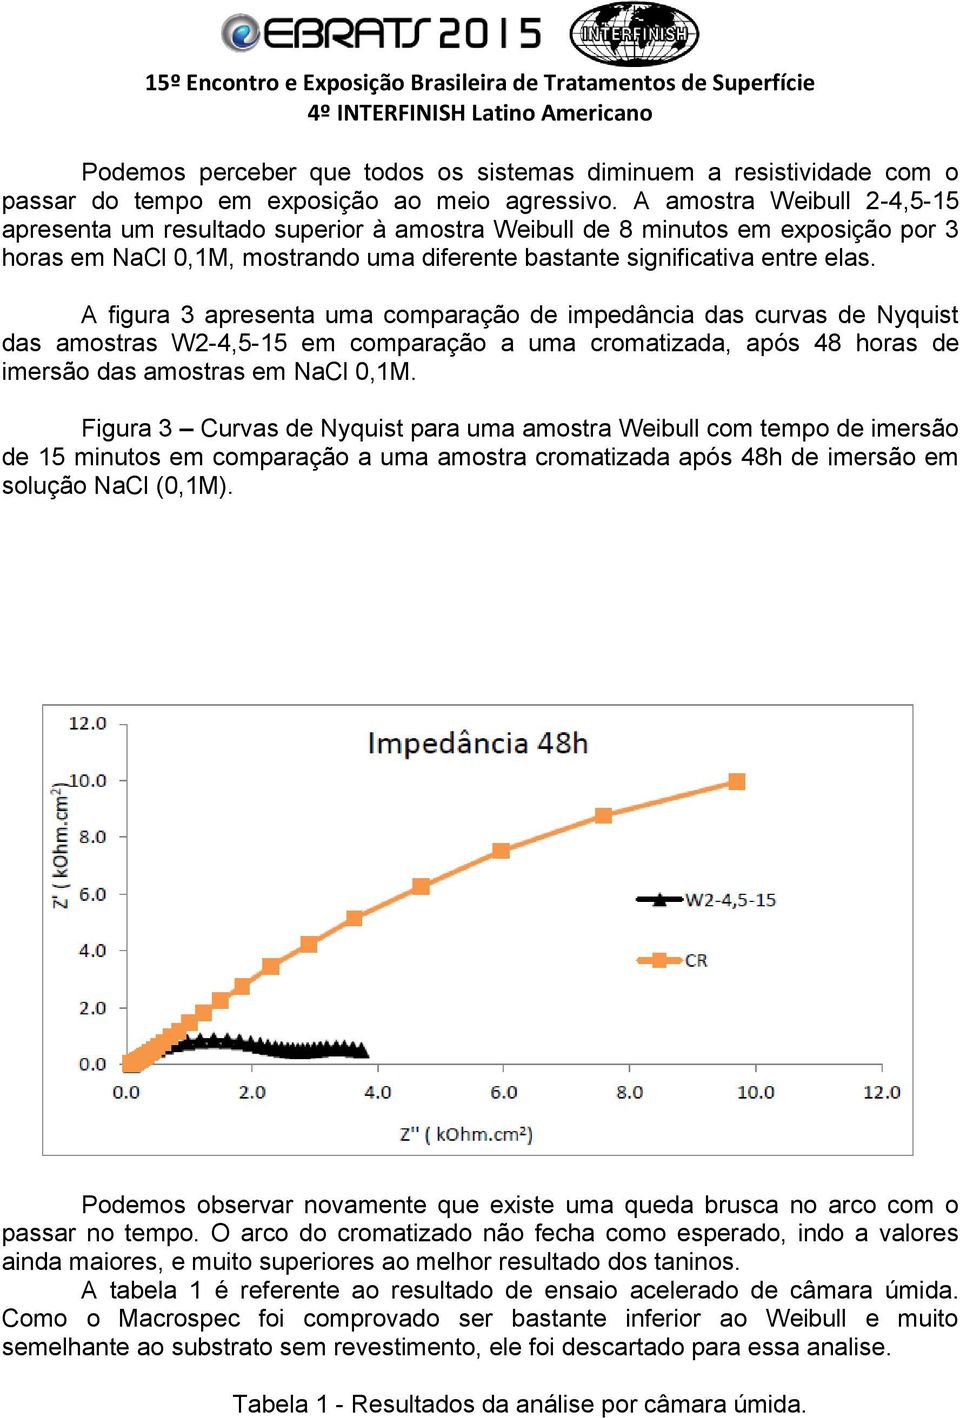 A figura 3 apresenta uma comparação de impedância das curvas de Nyquist das amostras W2-4,5-15 em comparação a uma cromatizada, após 48 horas de imersão das amostras em NaCl 0,1M.